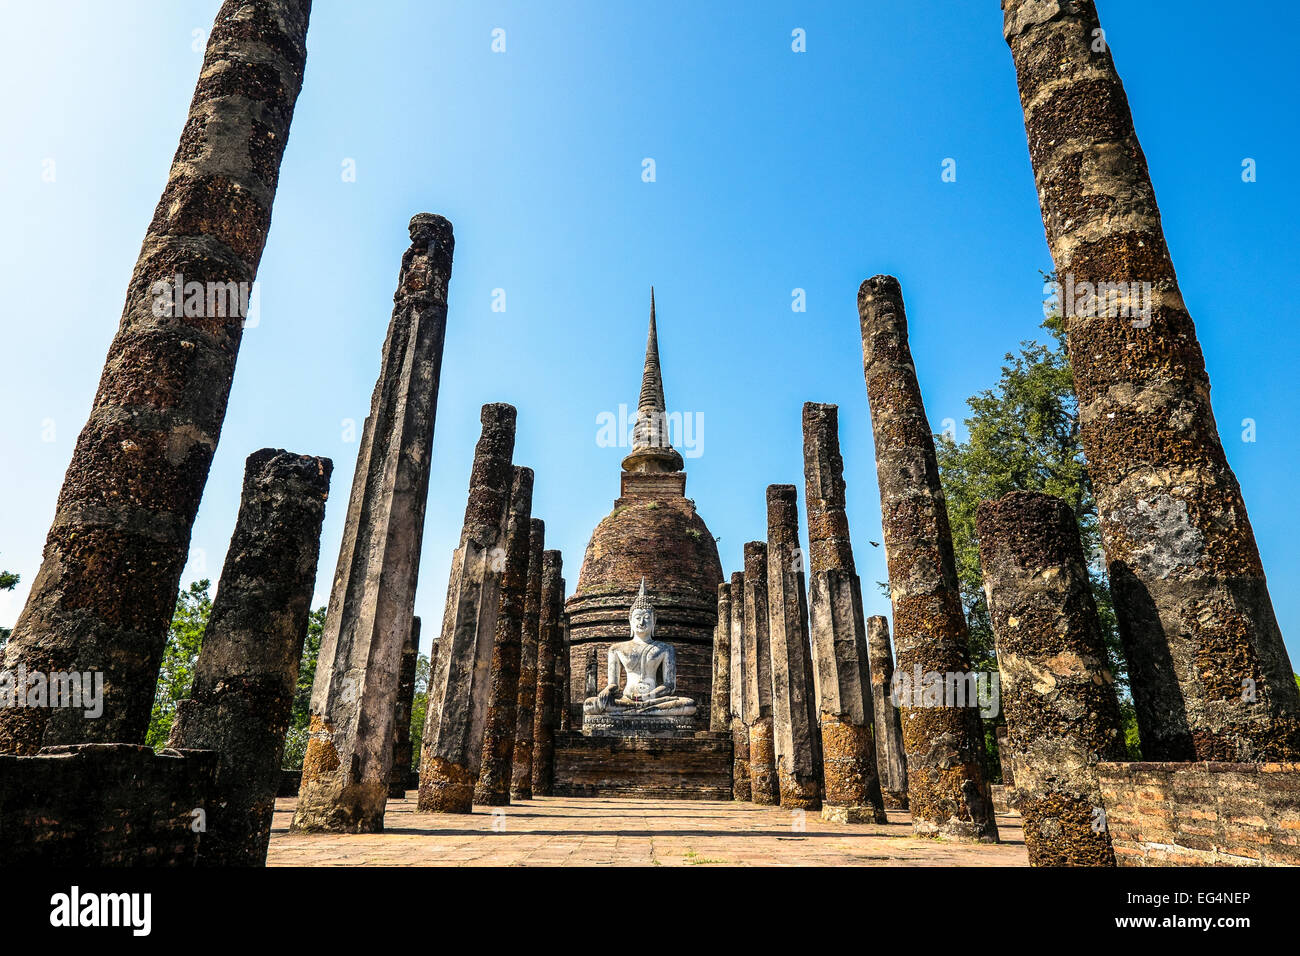 L'Asie. La Thaïlande, l'ancienne capitale du Siam. Parc archéologique de Sukhothai, classé au Patrimoine Mondial de l'UNESCO. Wat Mahathat statue de Bouddha Banque D'Images